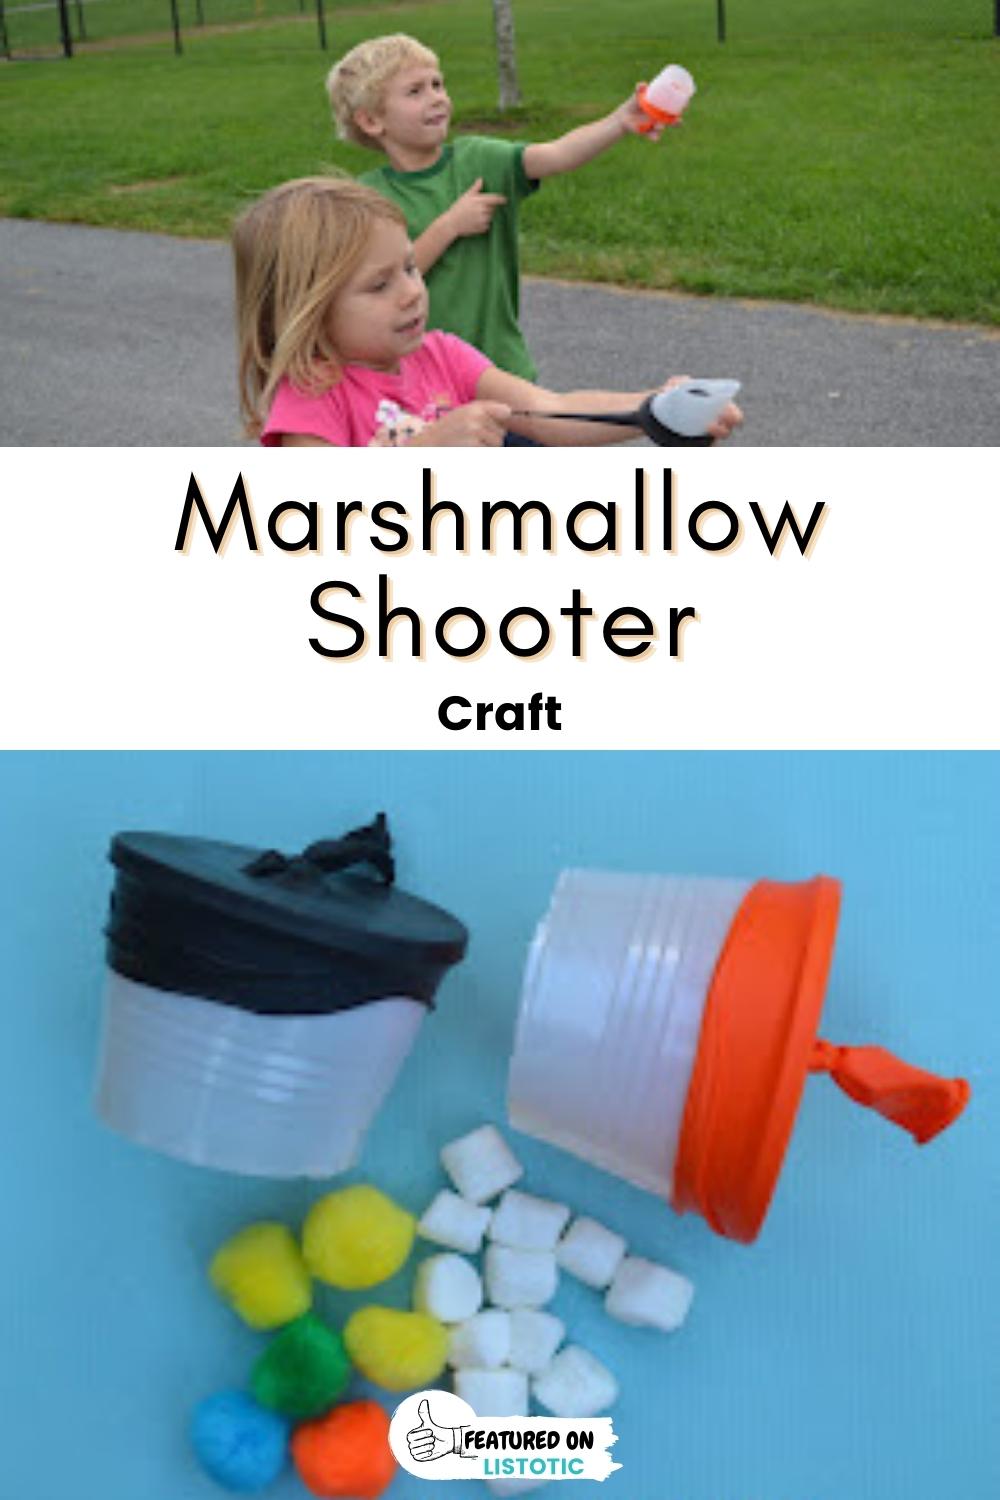 Marshmallow shooter.